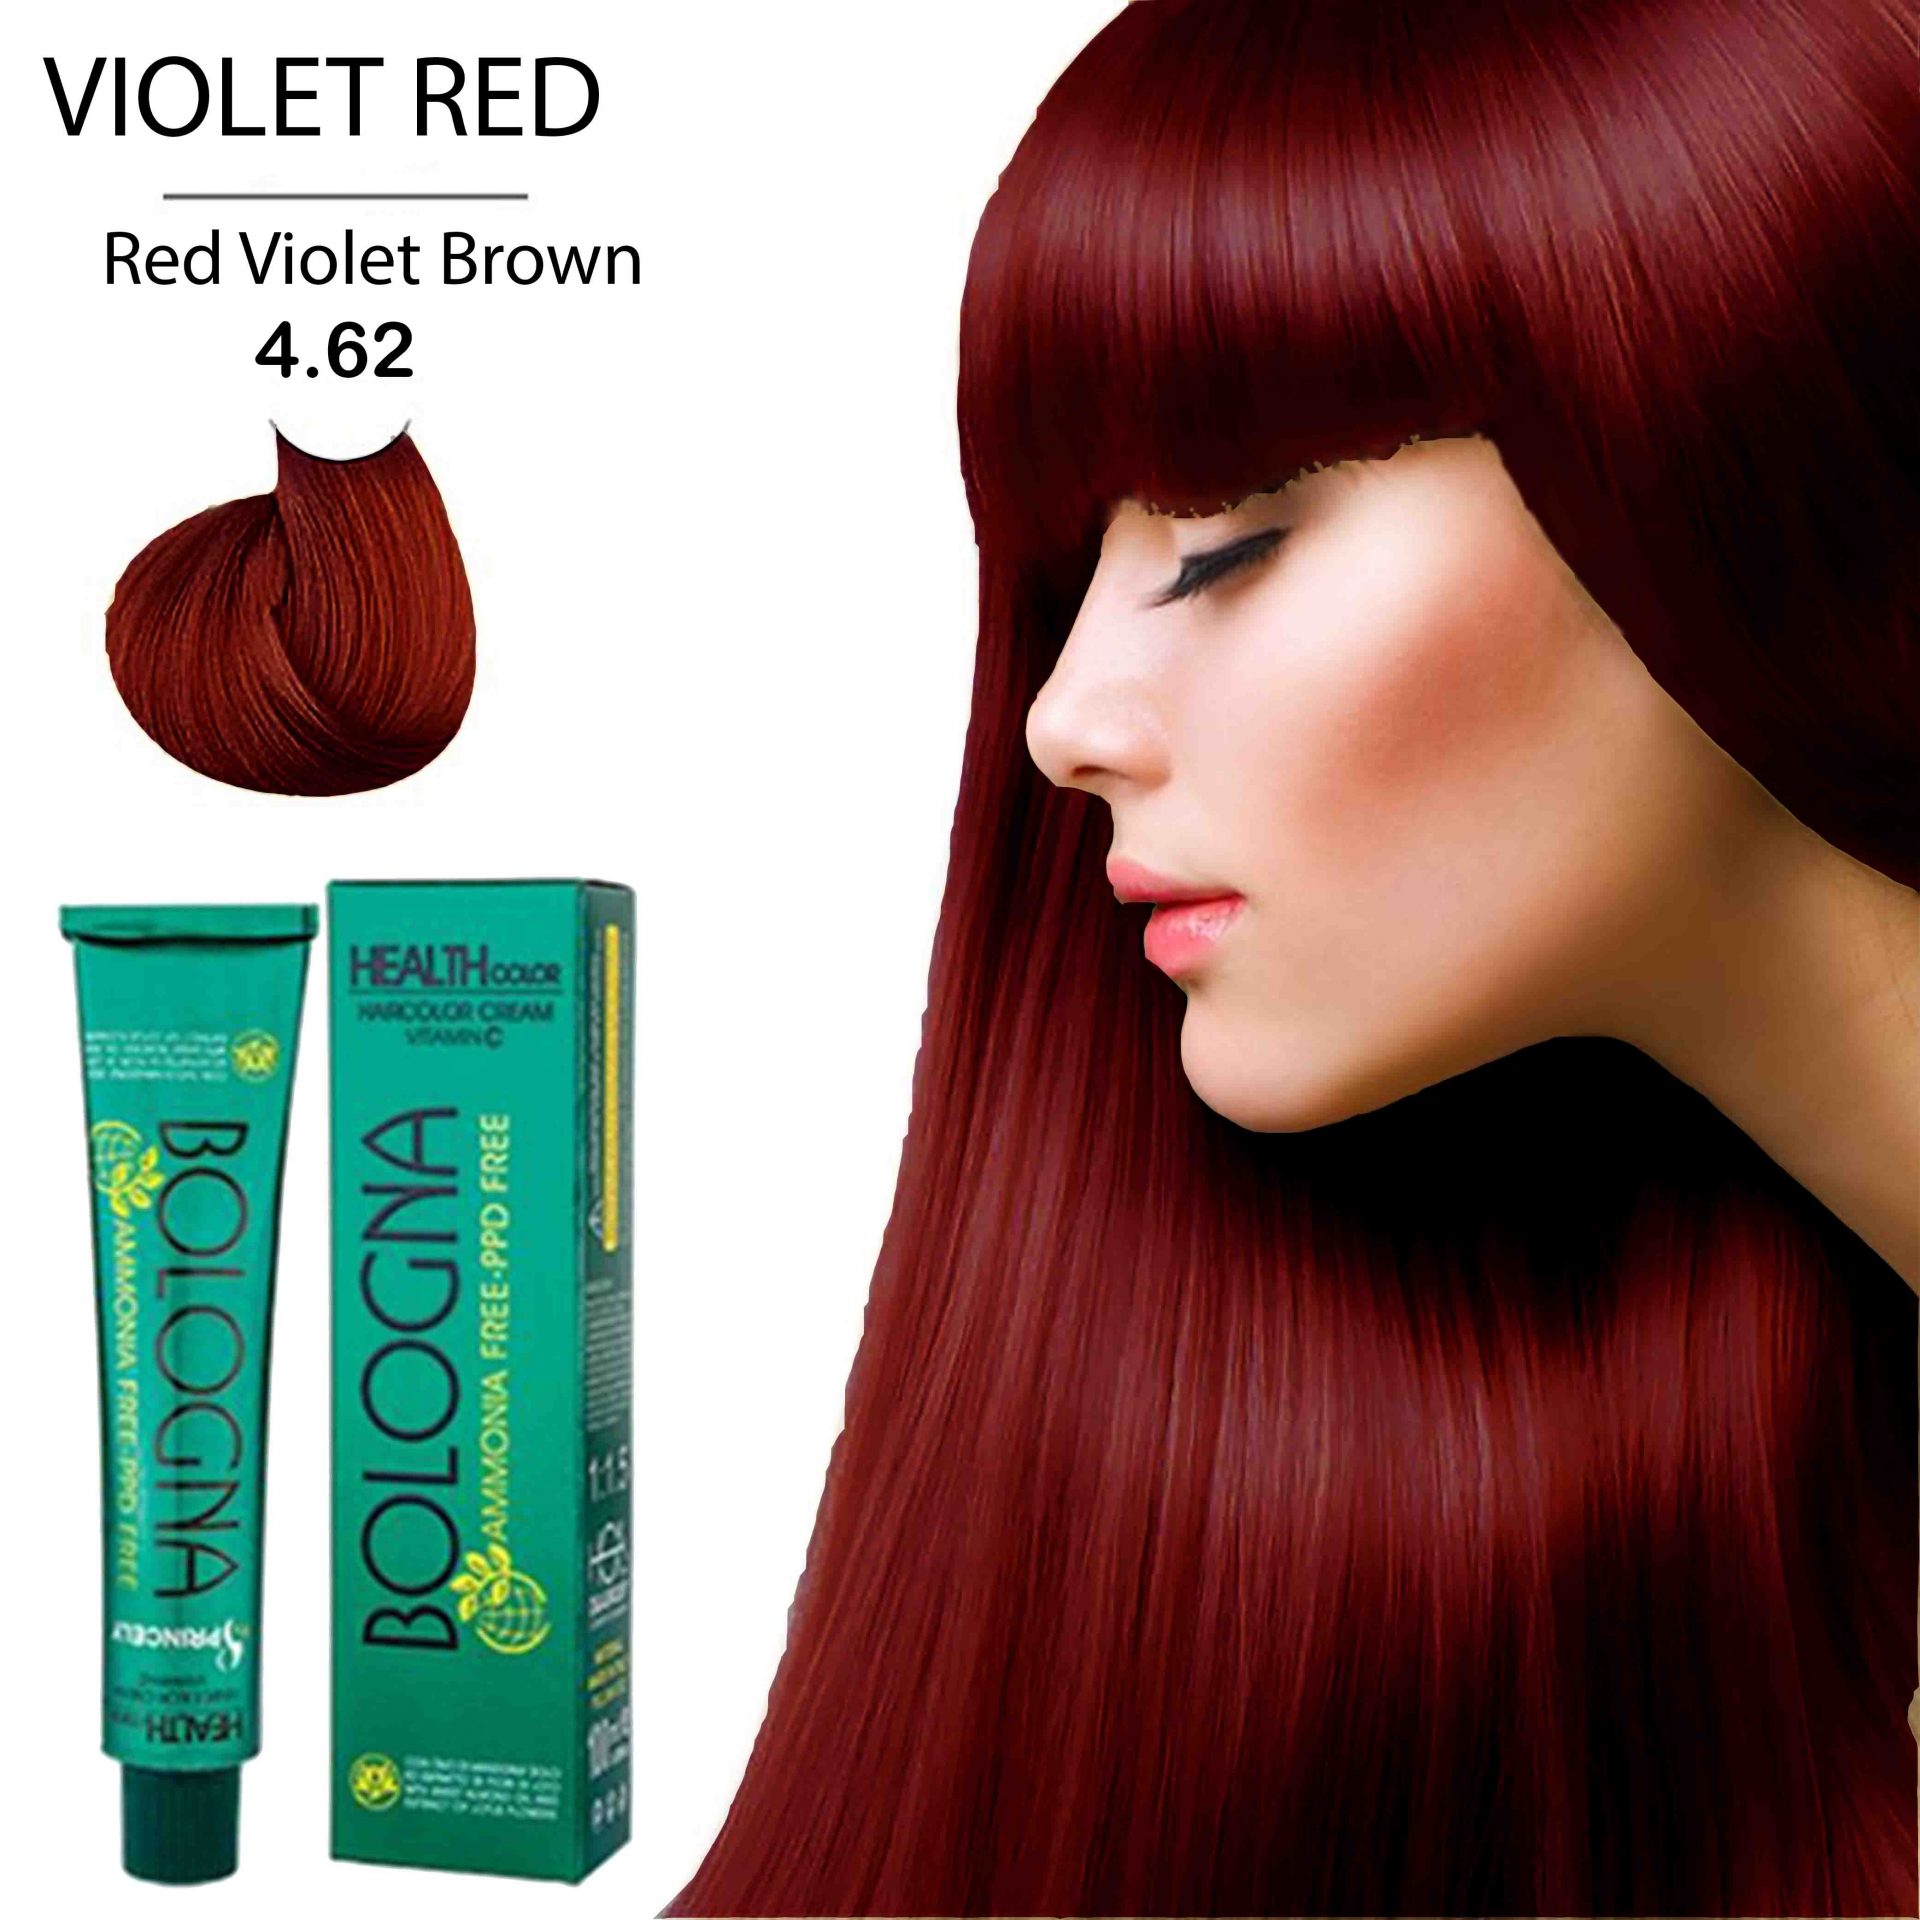 رنگ مو بدون آمونیاک بلونیا قهوه ای شرابی قرمز 100میل Red Violet brown 4.62_فروشگاه اینترنتی آرایشی بهداشتی آزارو در شیراز